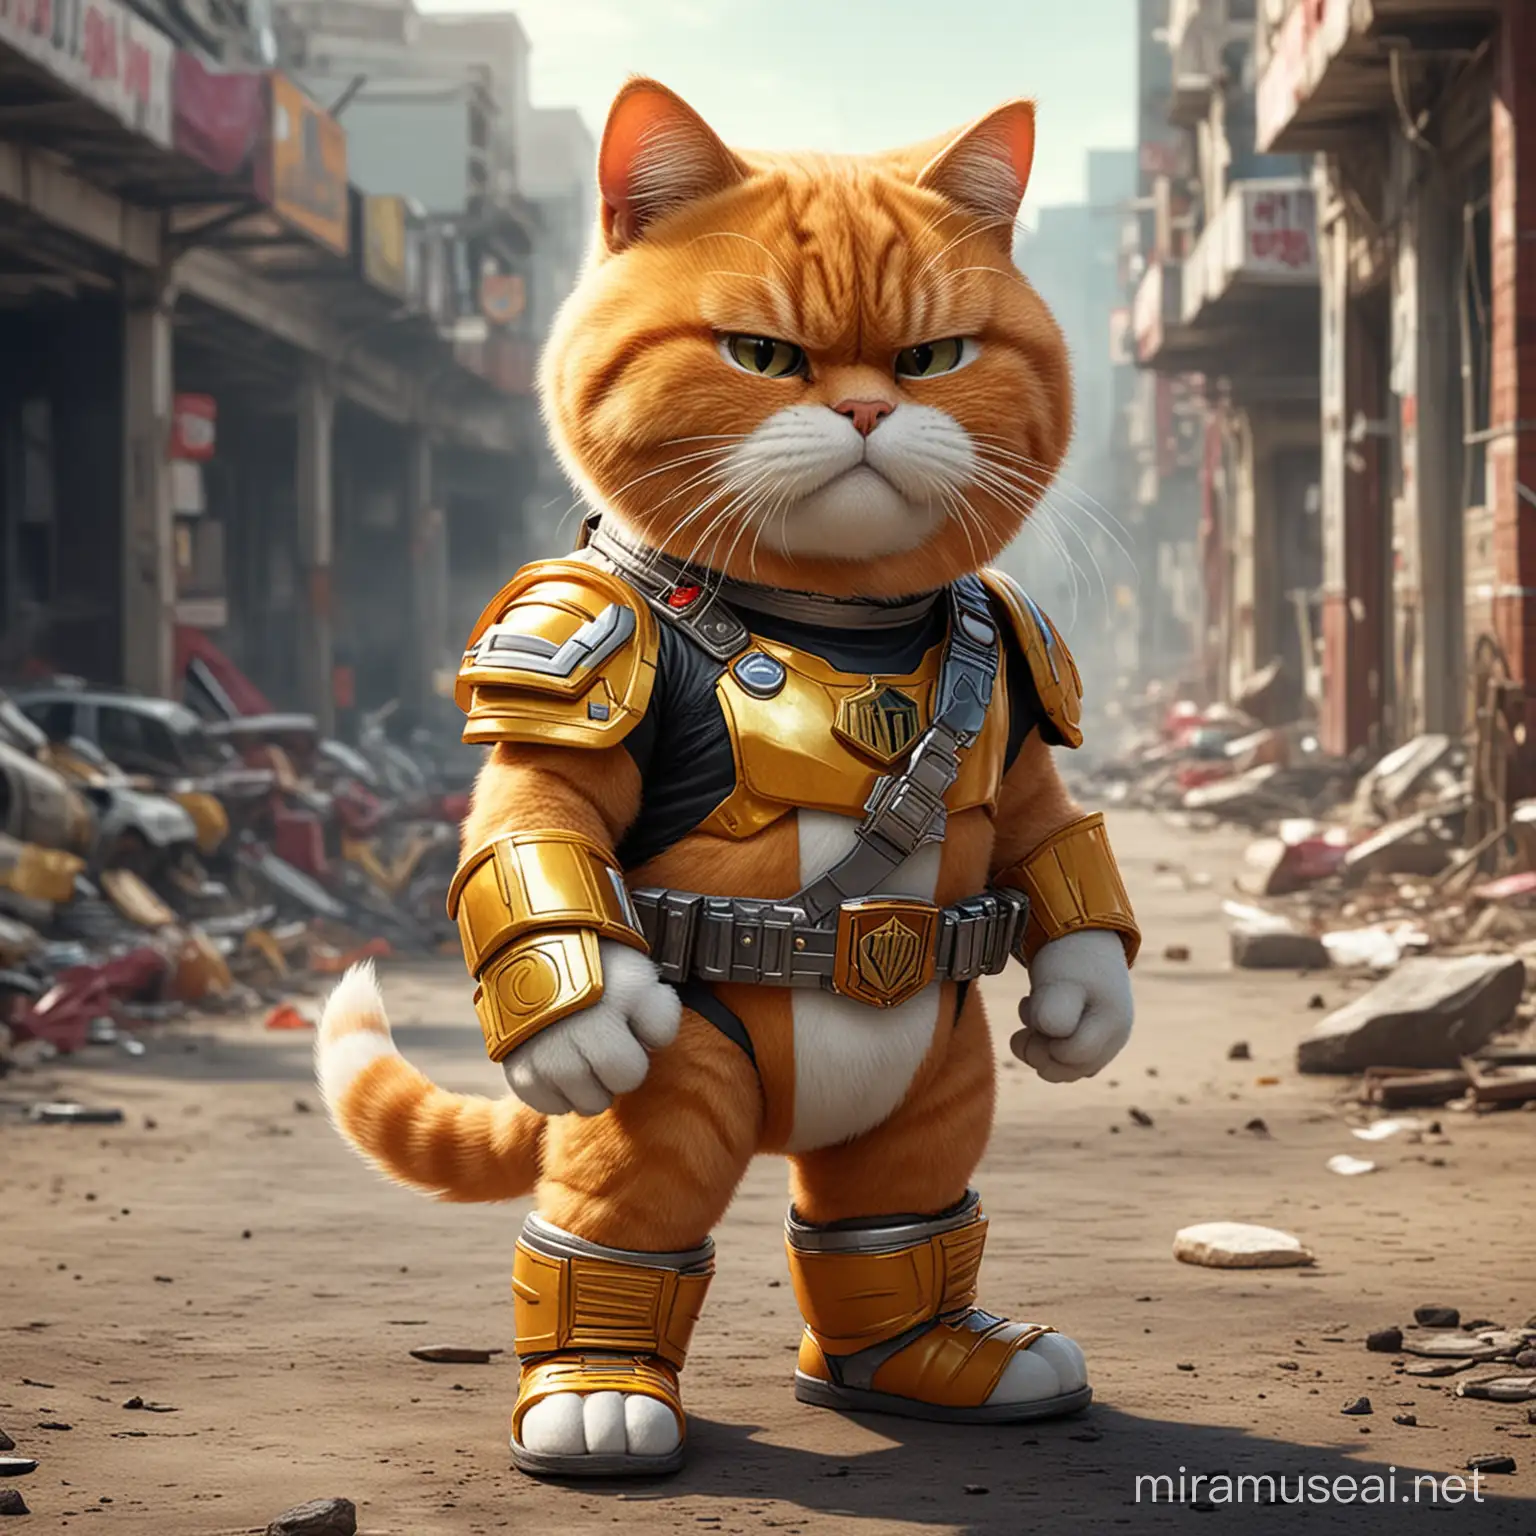 Garfield as a power ranger
